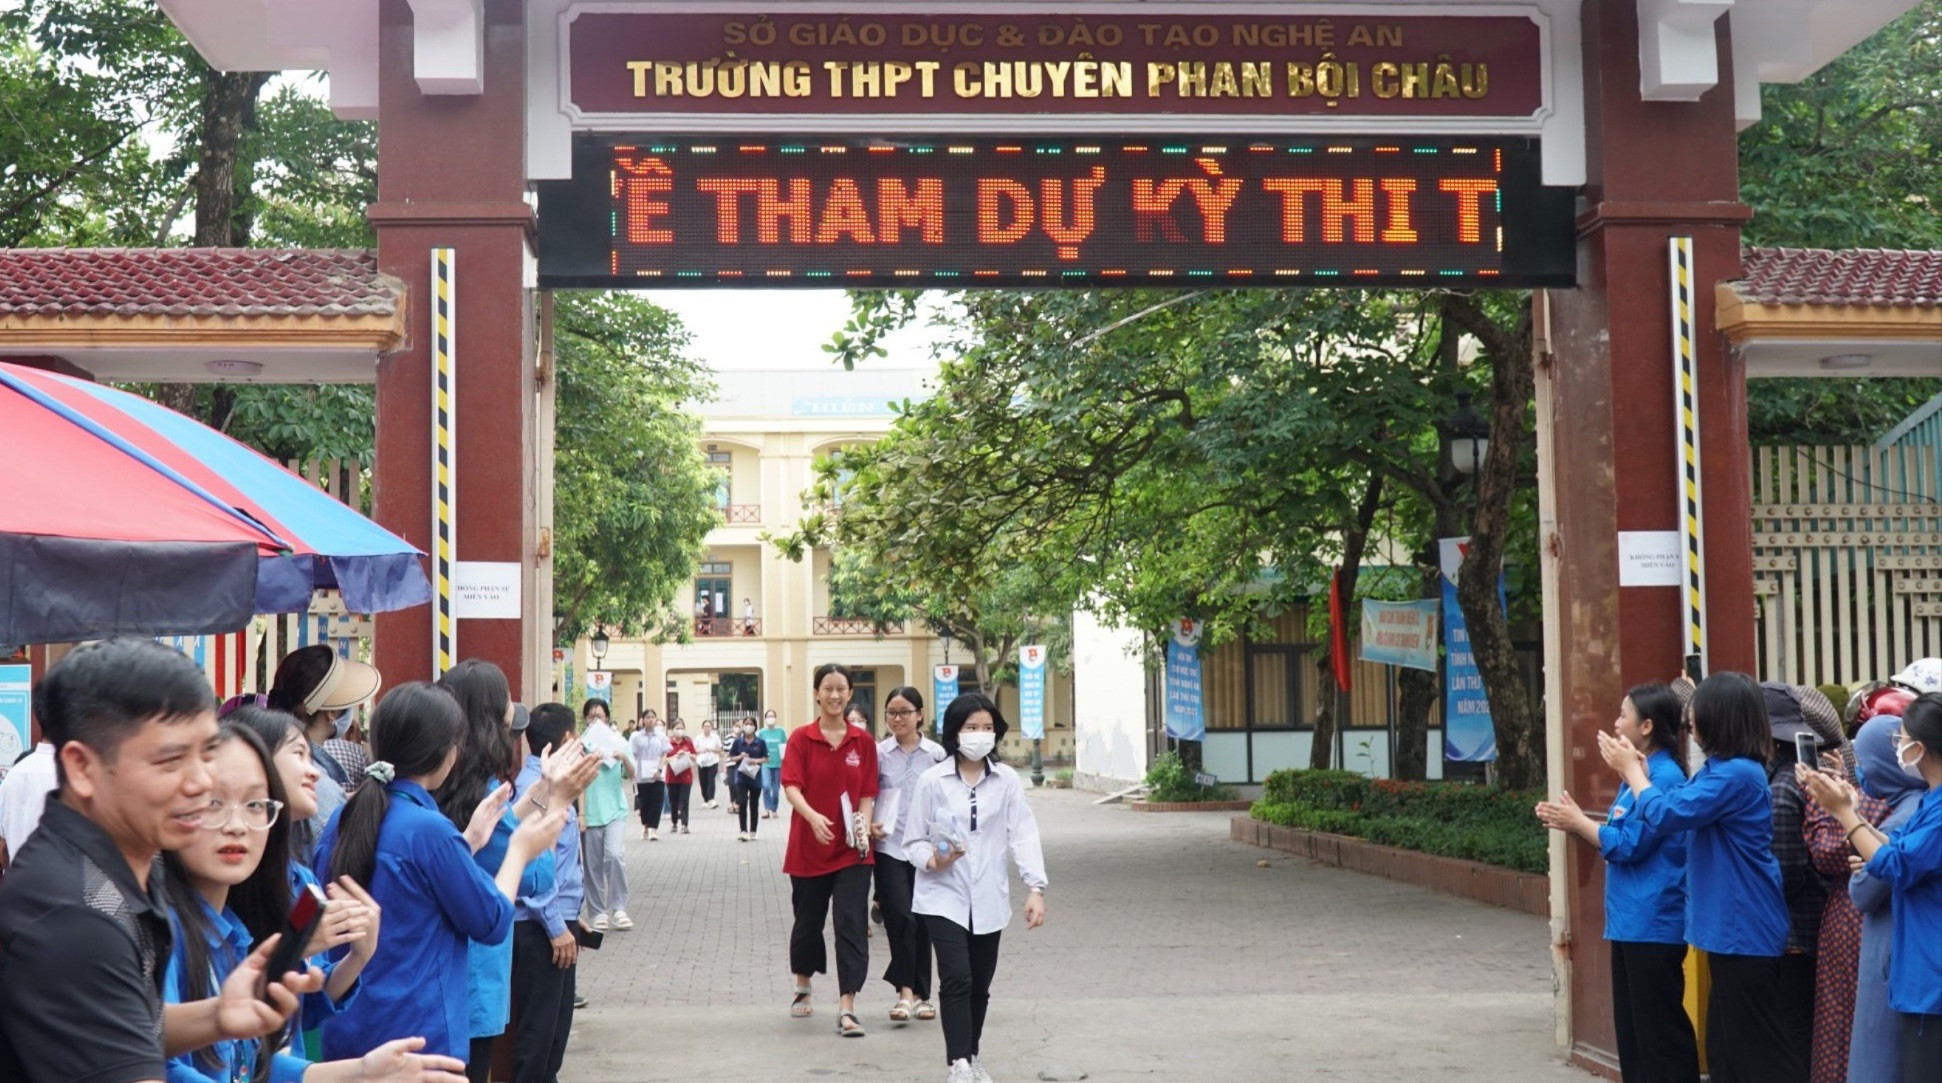 bna_Thí sinh dự thi vào Trường THPT chuyên Phan Bội Châu.jpg